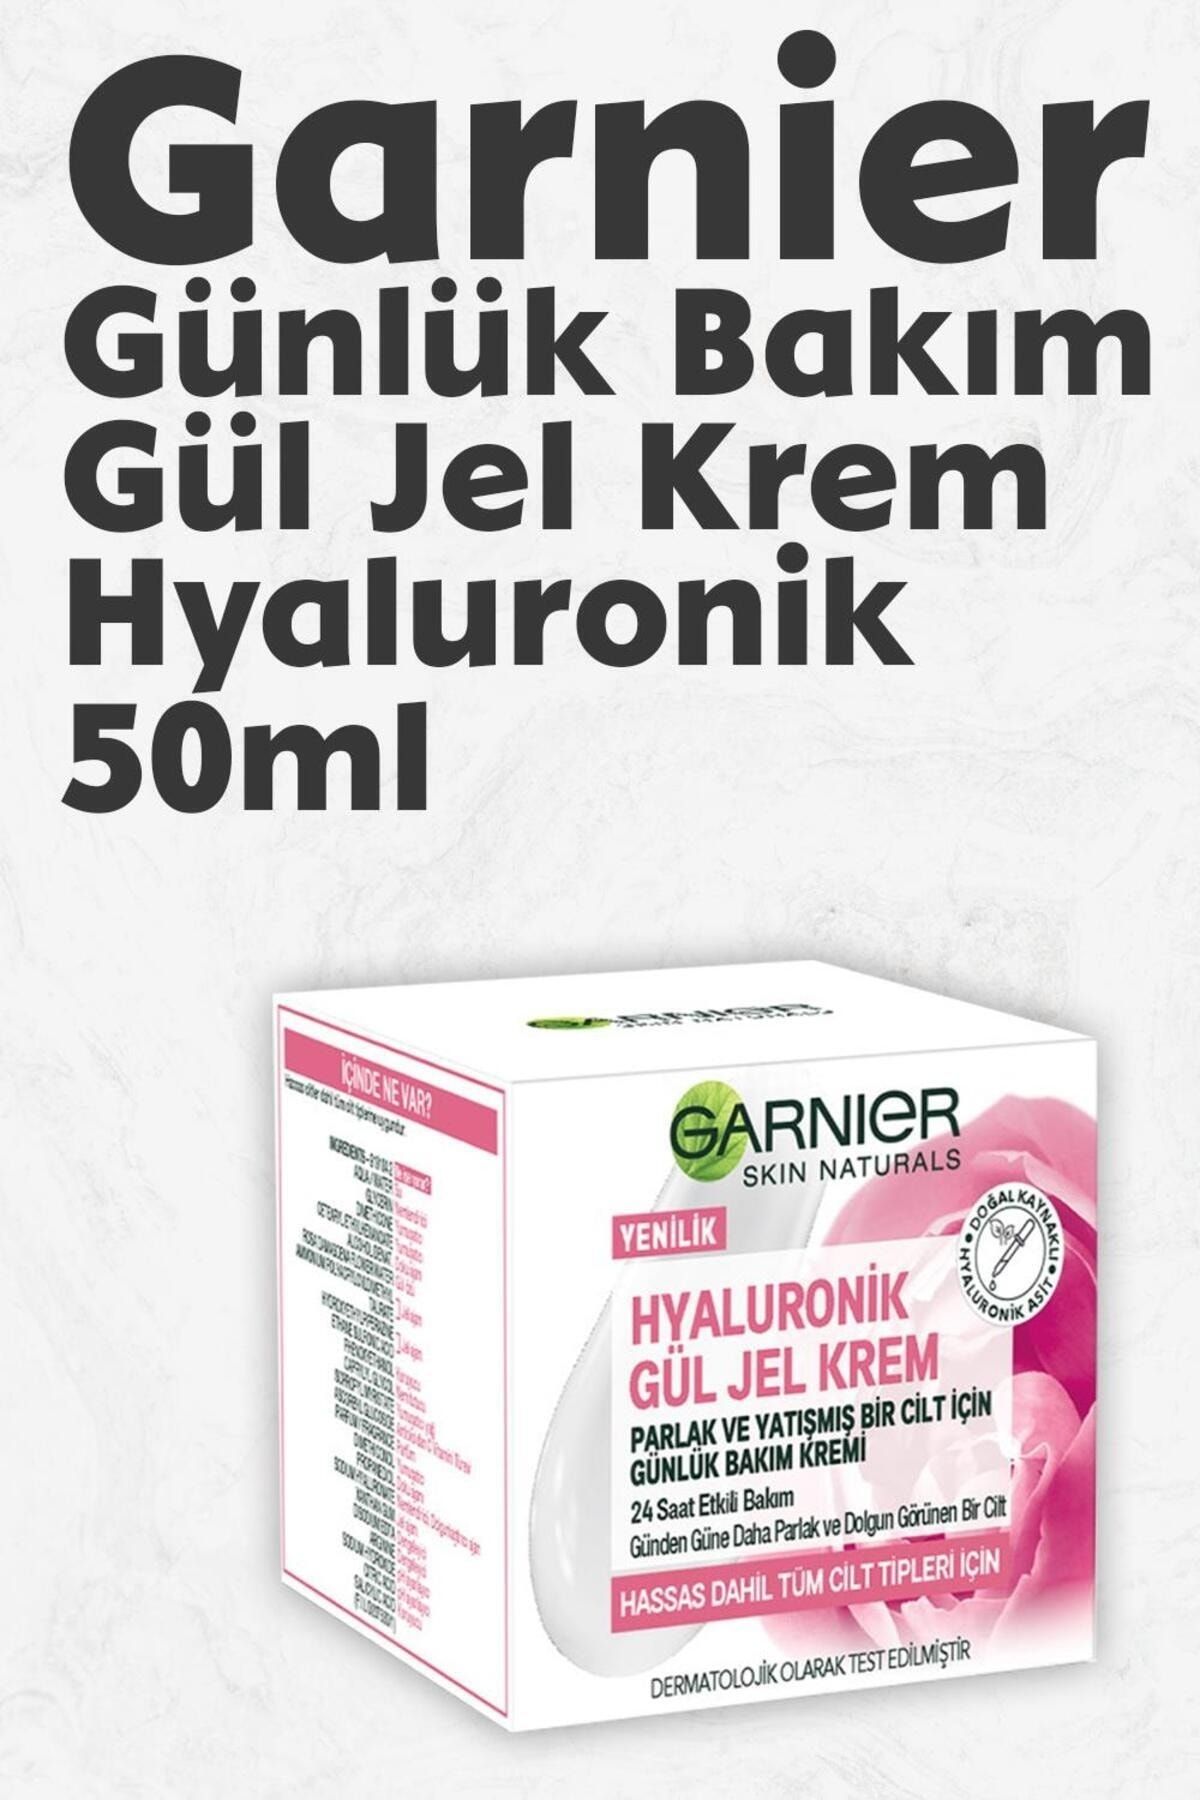 Garnier Günlük Bakım Gül Jel Krem Hyaluronik 50 ml